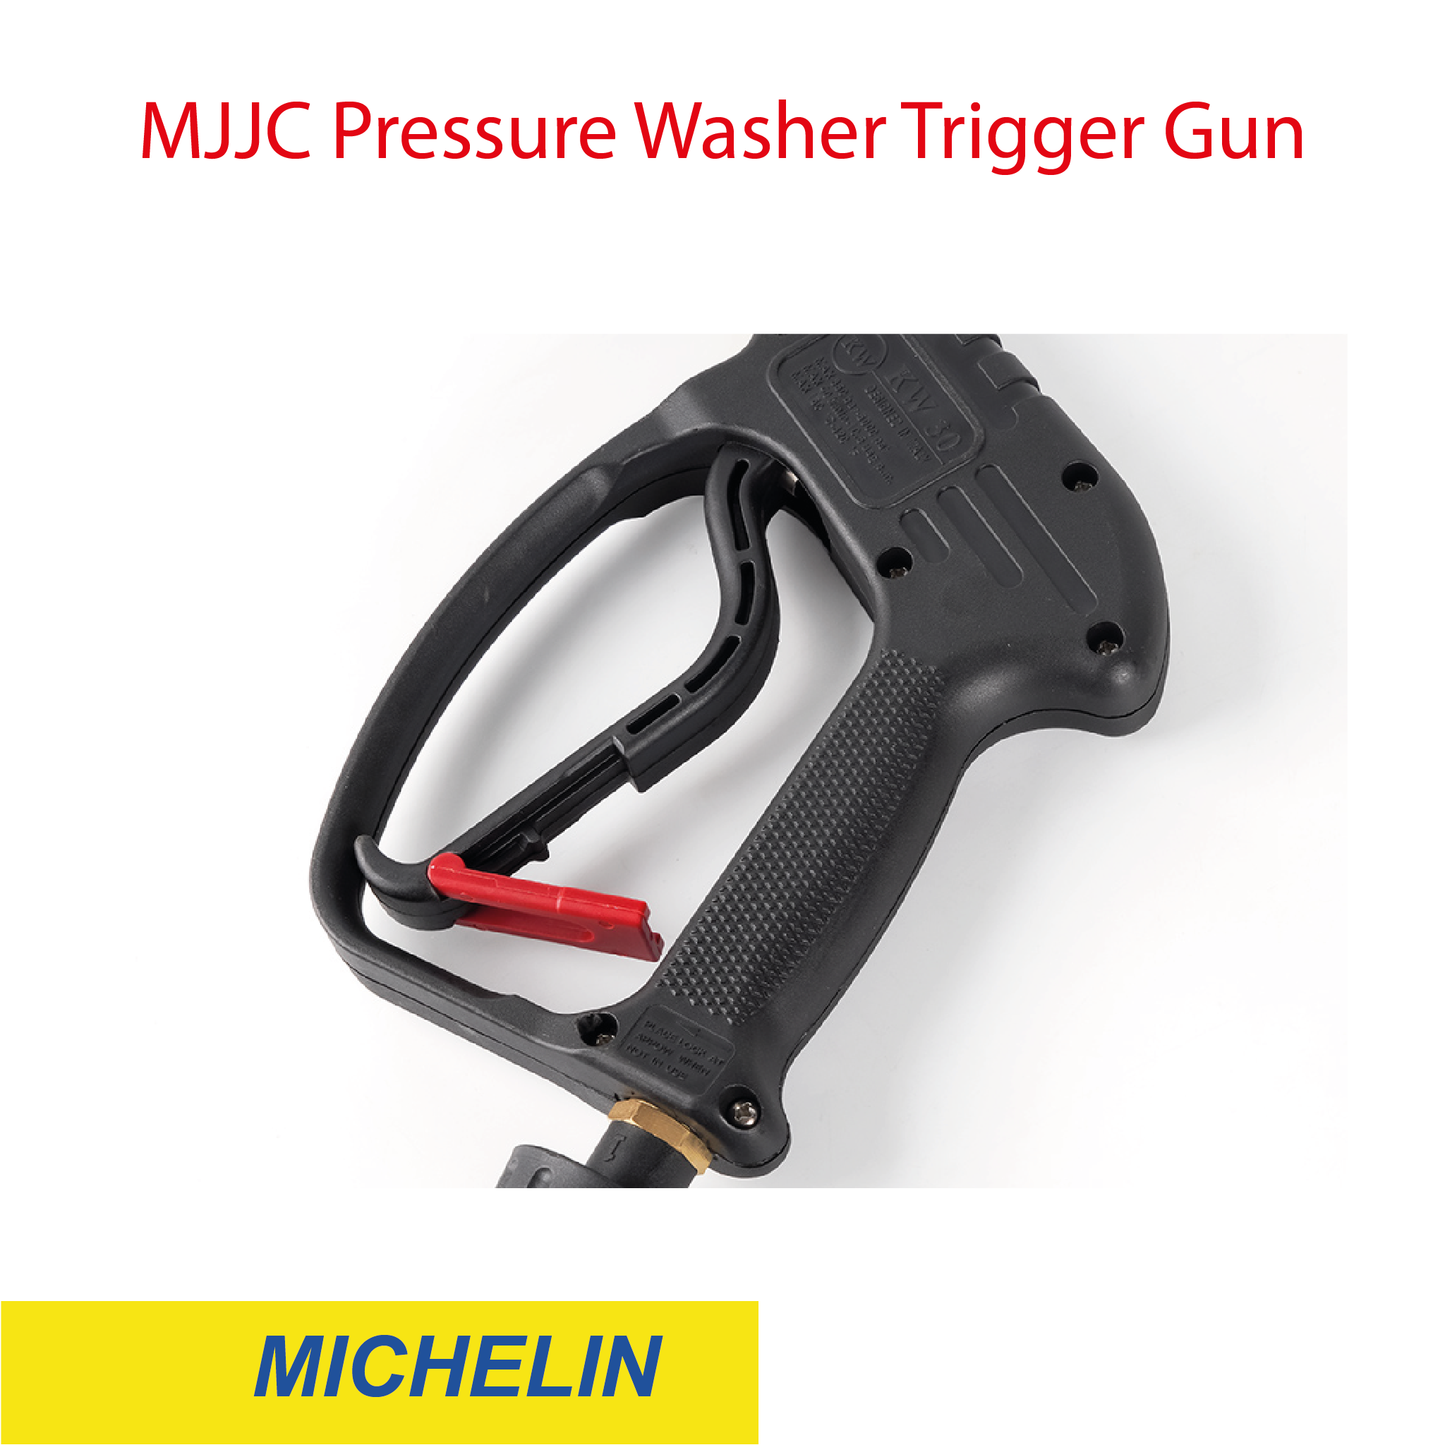 Michelin - MJJC Light Weight Pressure Washer Trigger Spray Gun with Live Swivel